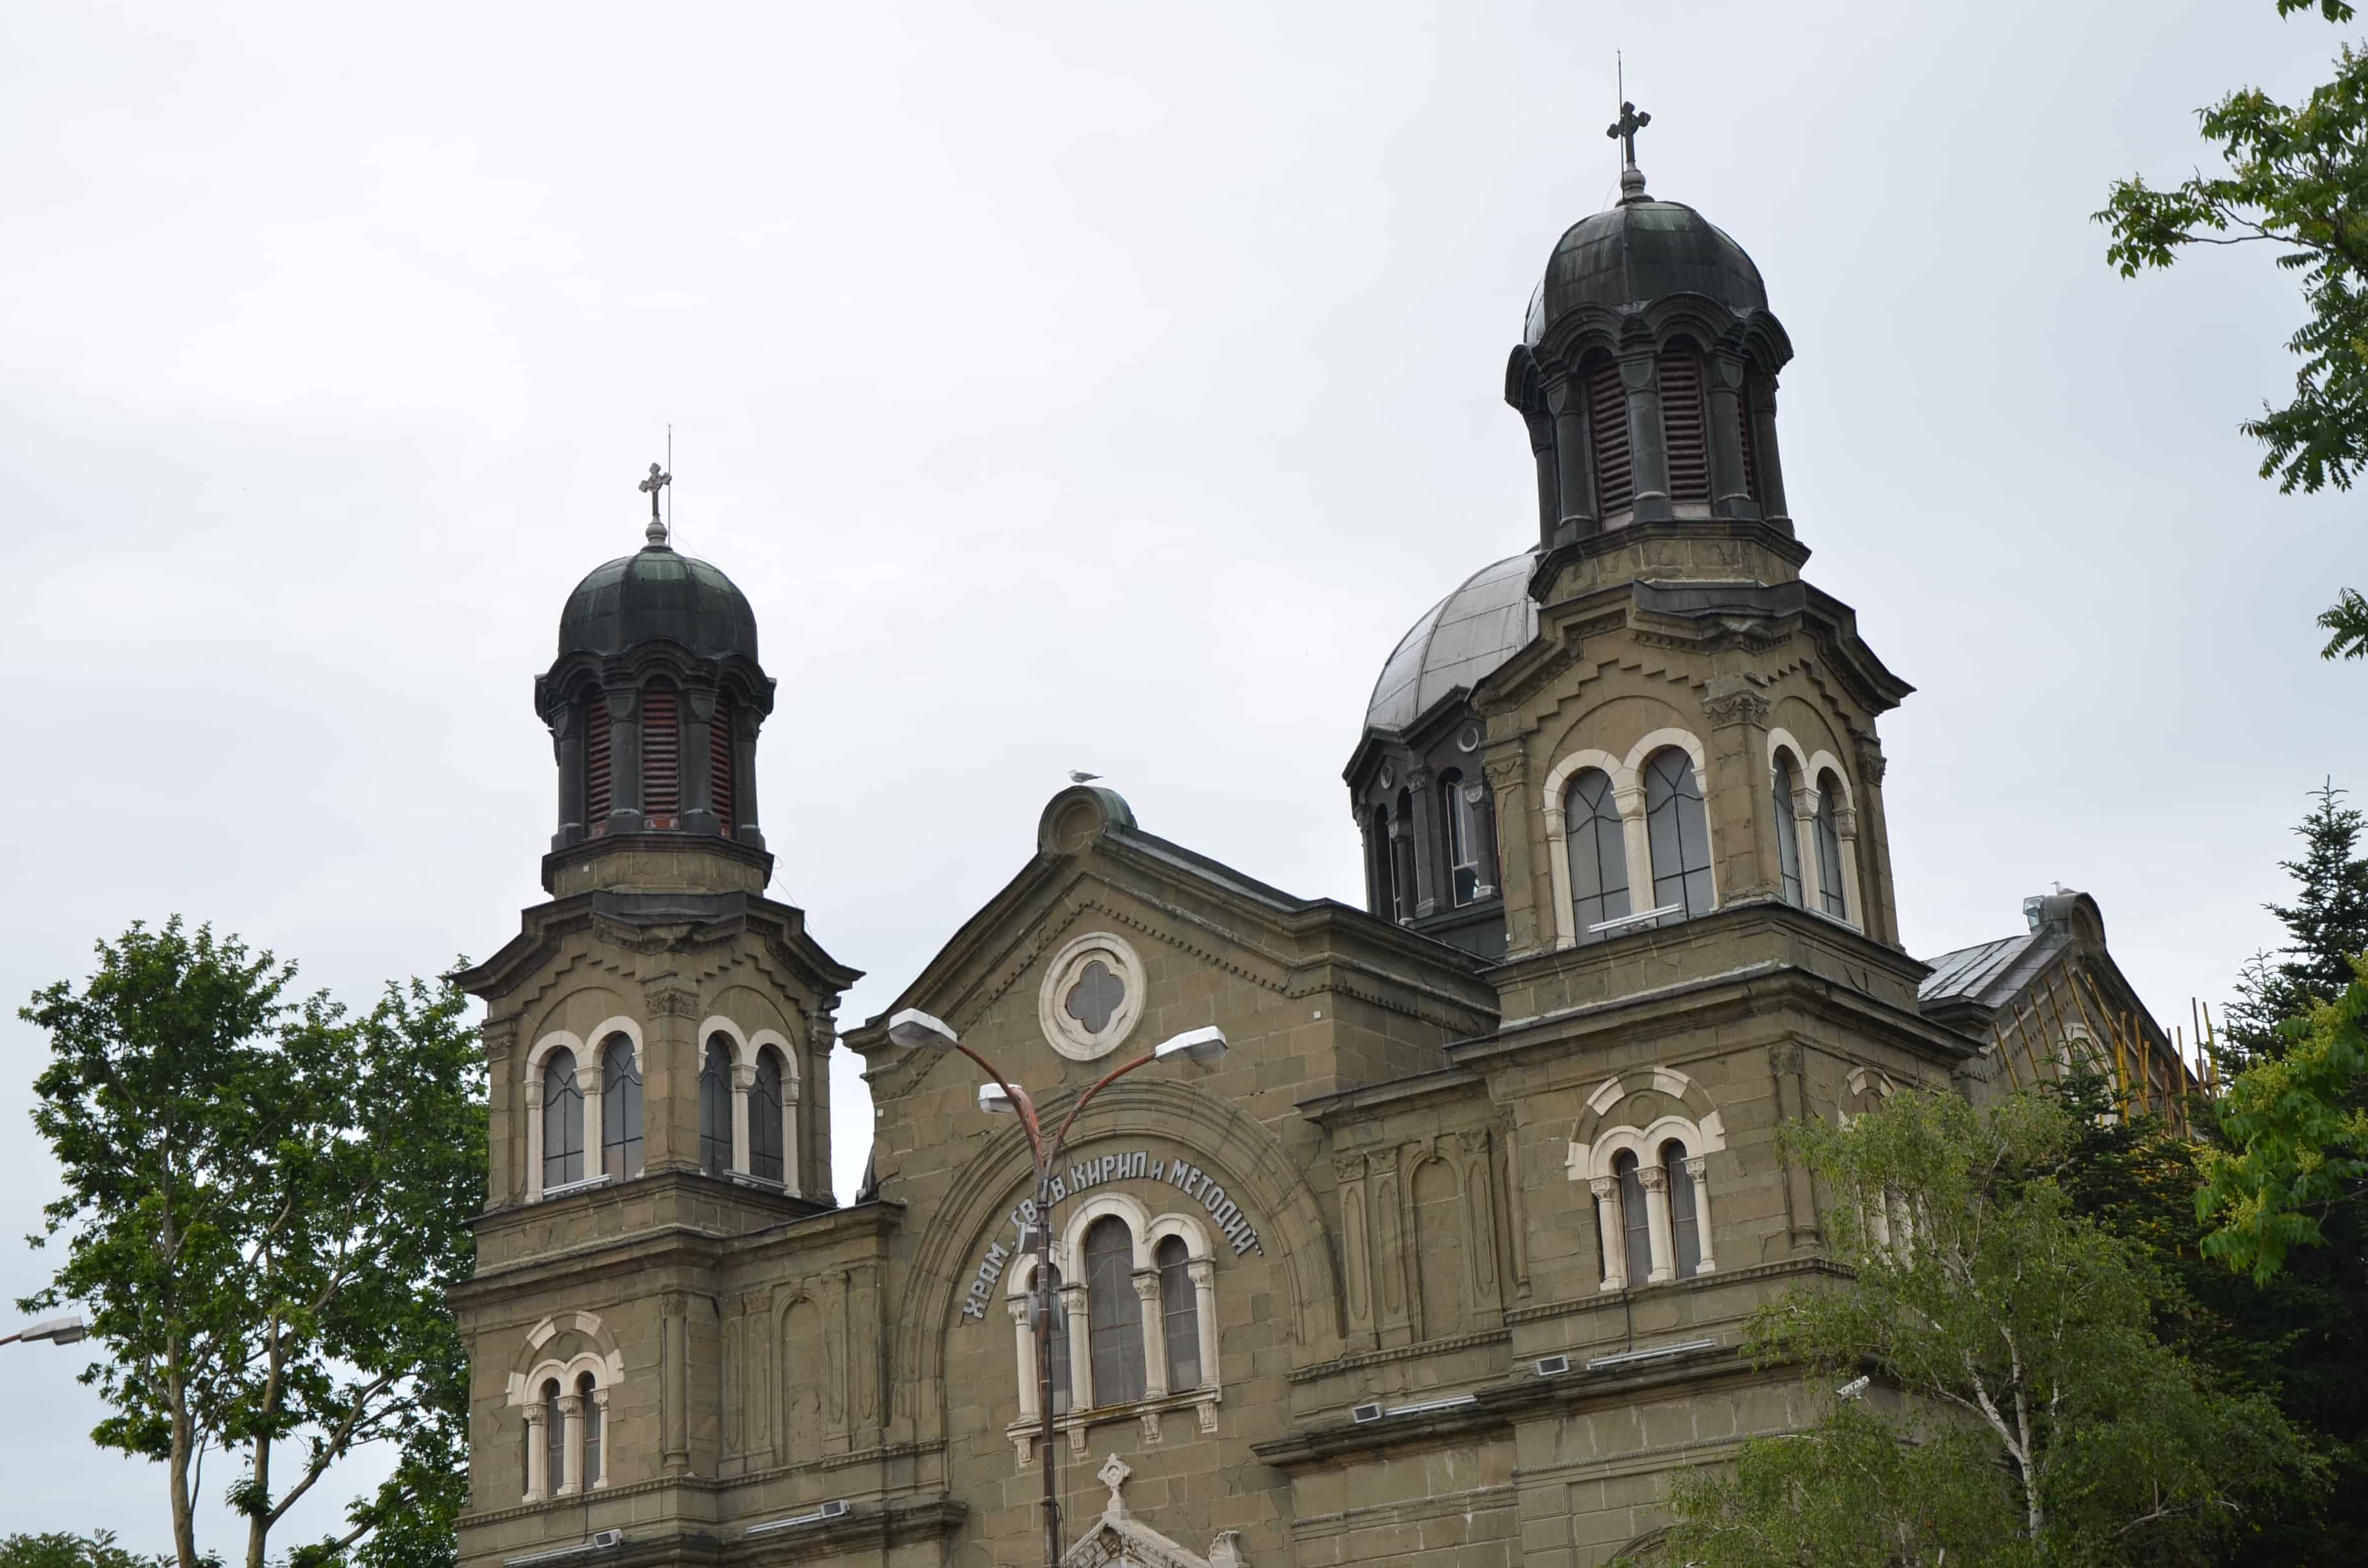 Sveti Kiril & Metody Church in Burgas, Bulgaria